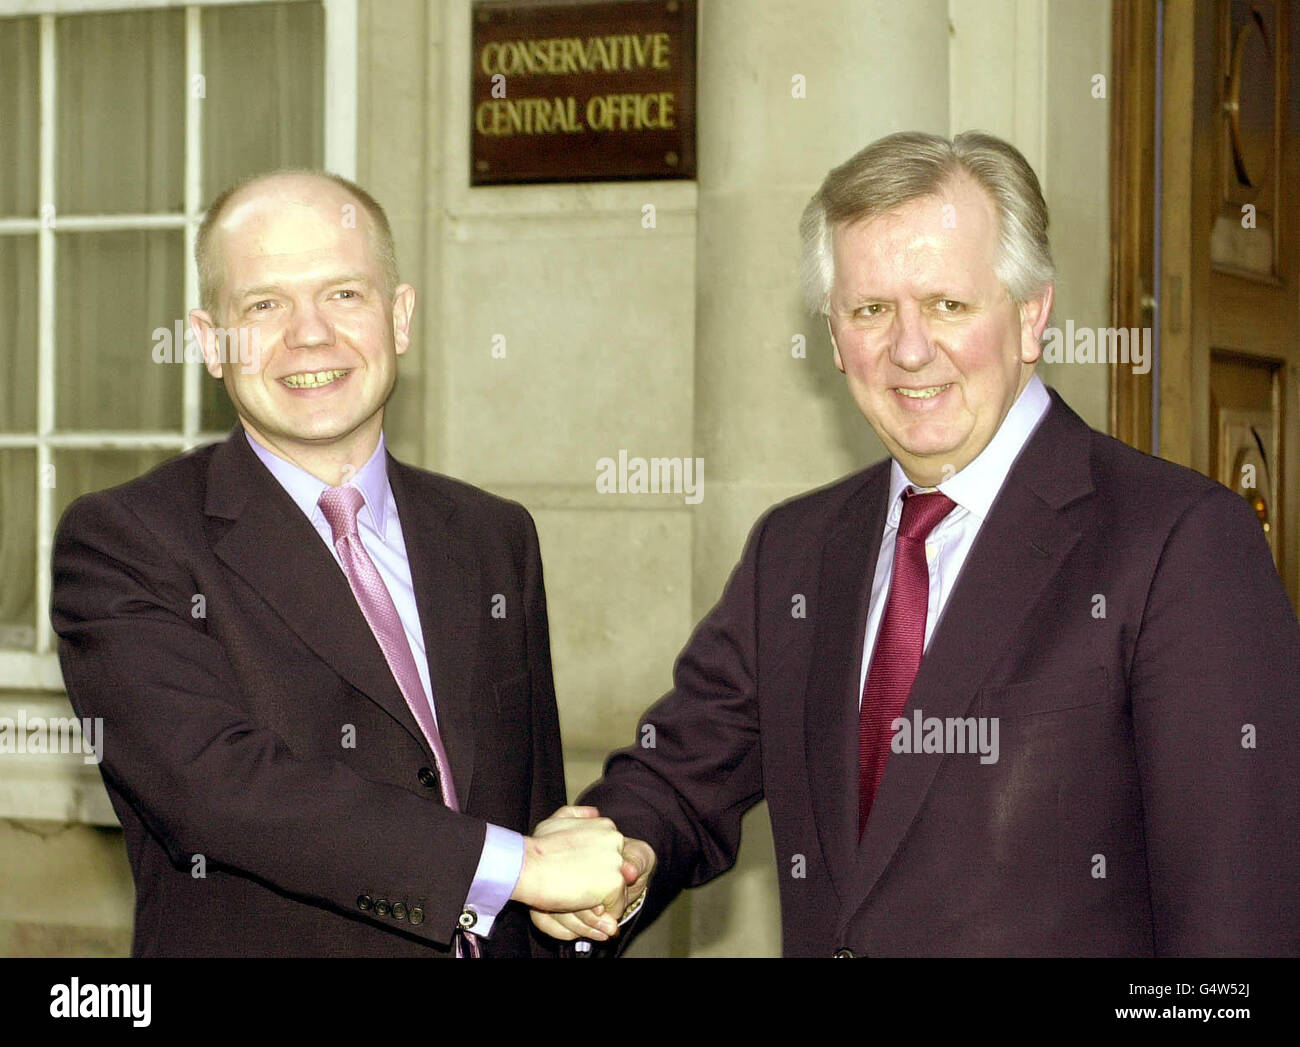 Il leader del partito conservatore William Hague (L) con il candidato del sindaco di Tory London Steve Norris, al di fuori dell'ufficio conservatore di Londra, dopo che l'ex ministro dei trasporti è stato nominato come loro candidato per combattere le elezioni per il sindaco. * ...il 4 maggio 2000. Foto Stock